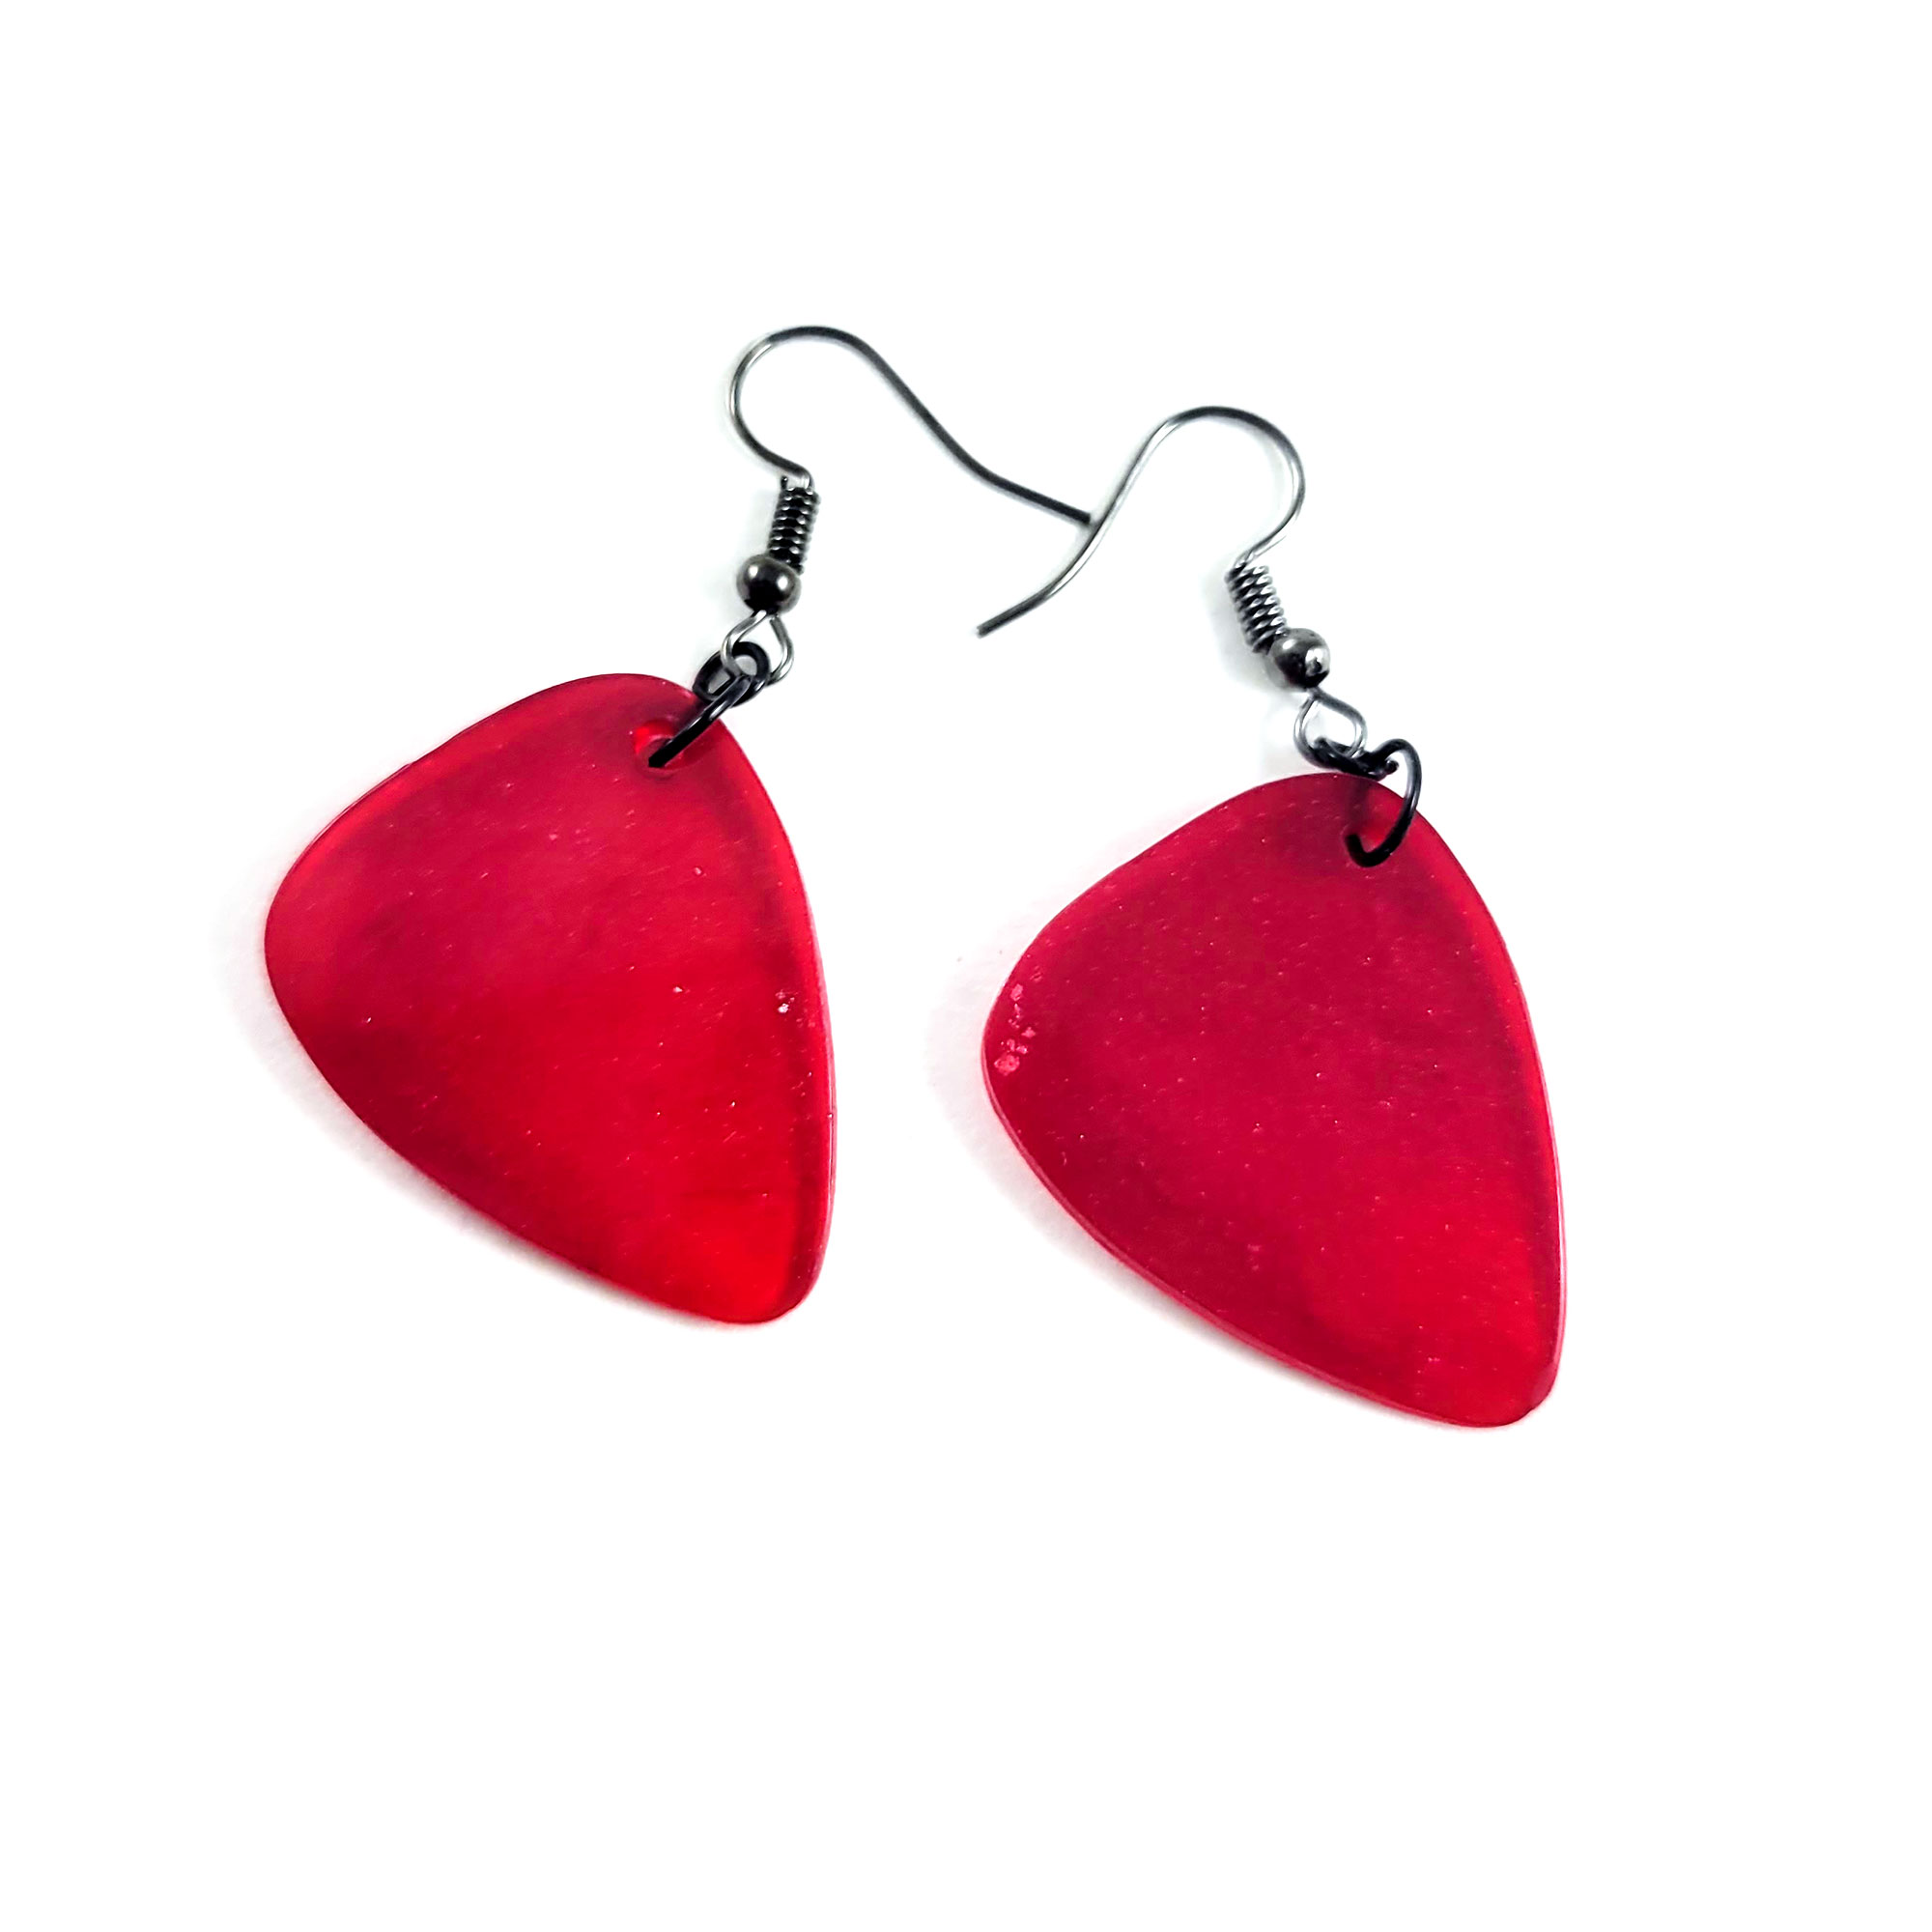 Red Guitar Pick Earrings by Wilde Designs